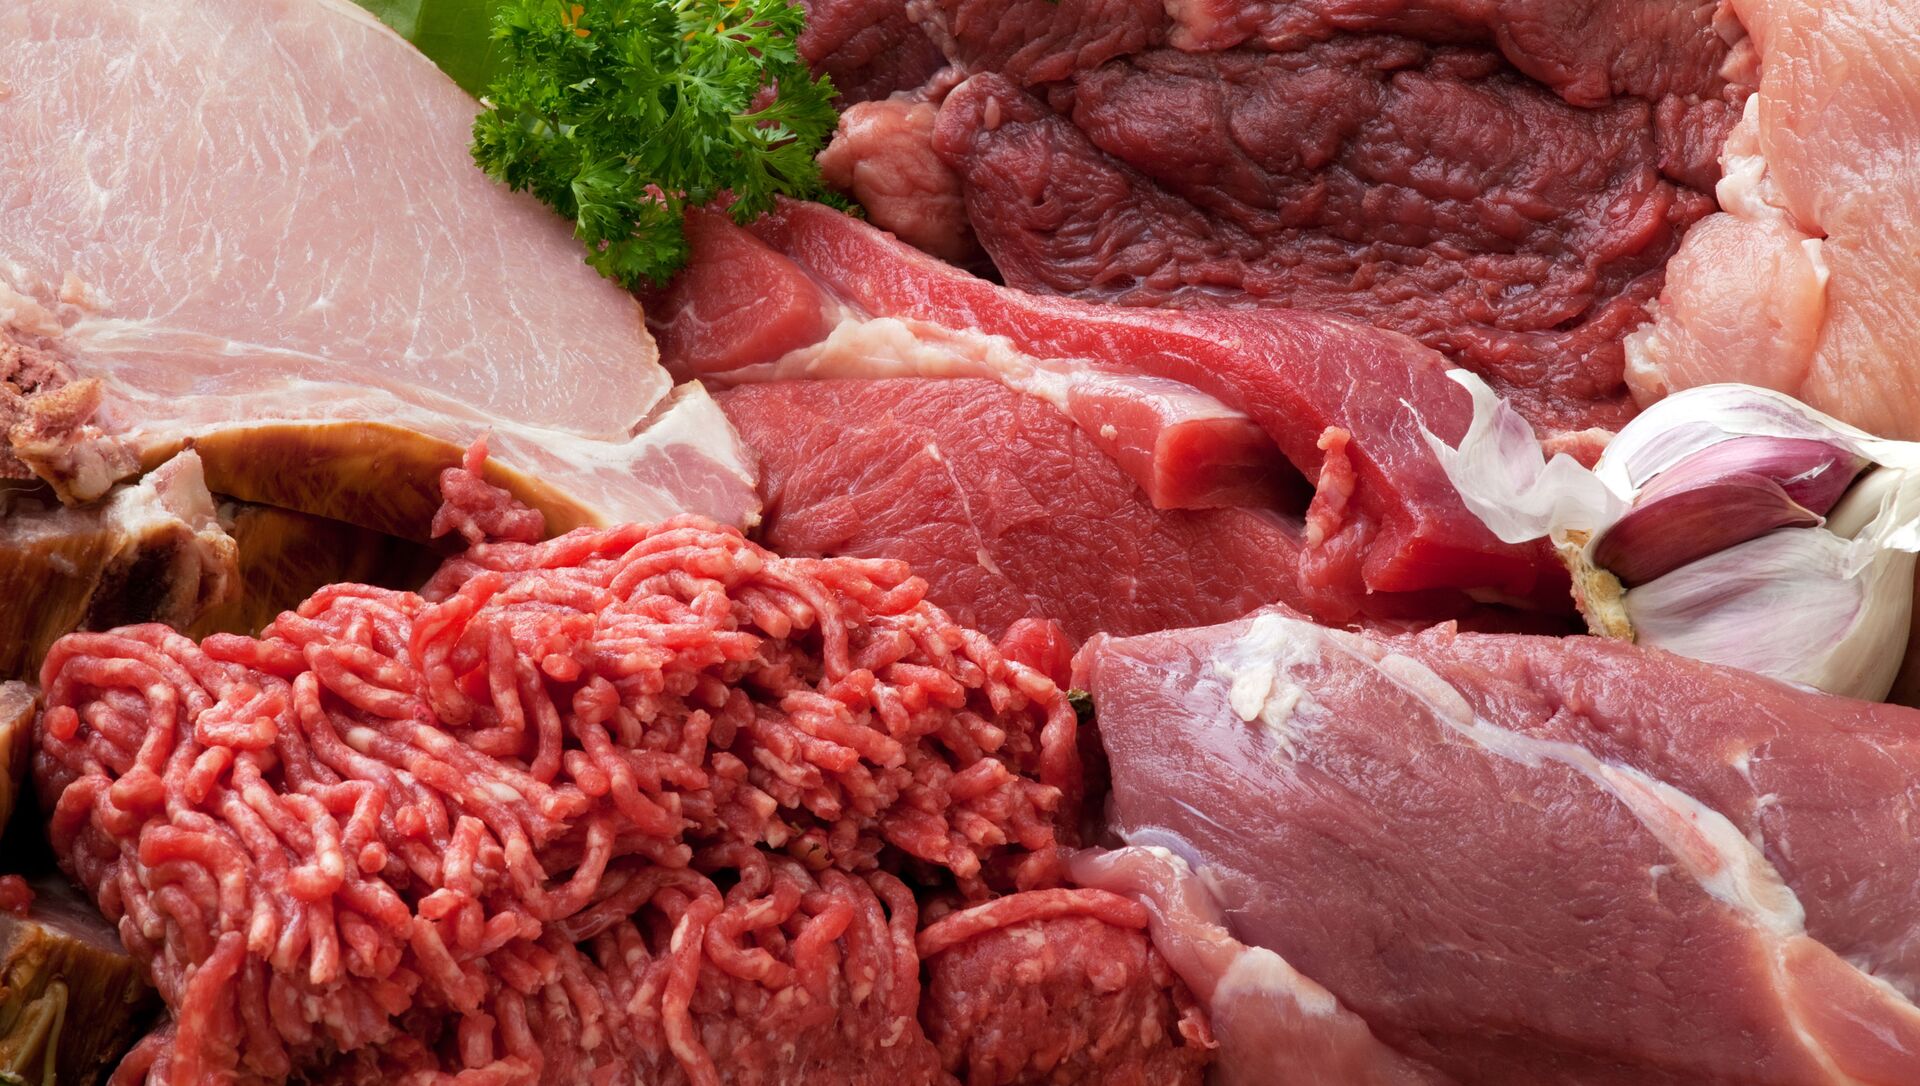 اللحوم الحمراء .. تعرف على فوائداها ومخاطرها - قناة مصر الزراعية